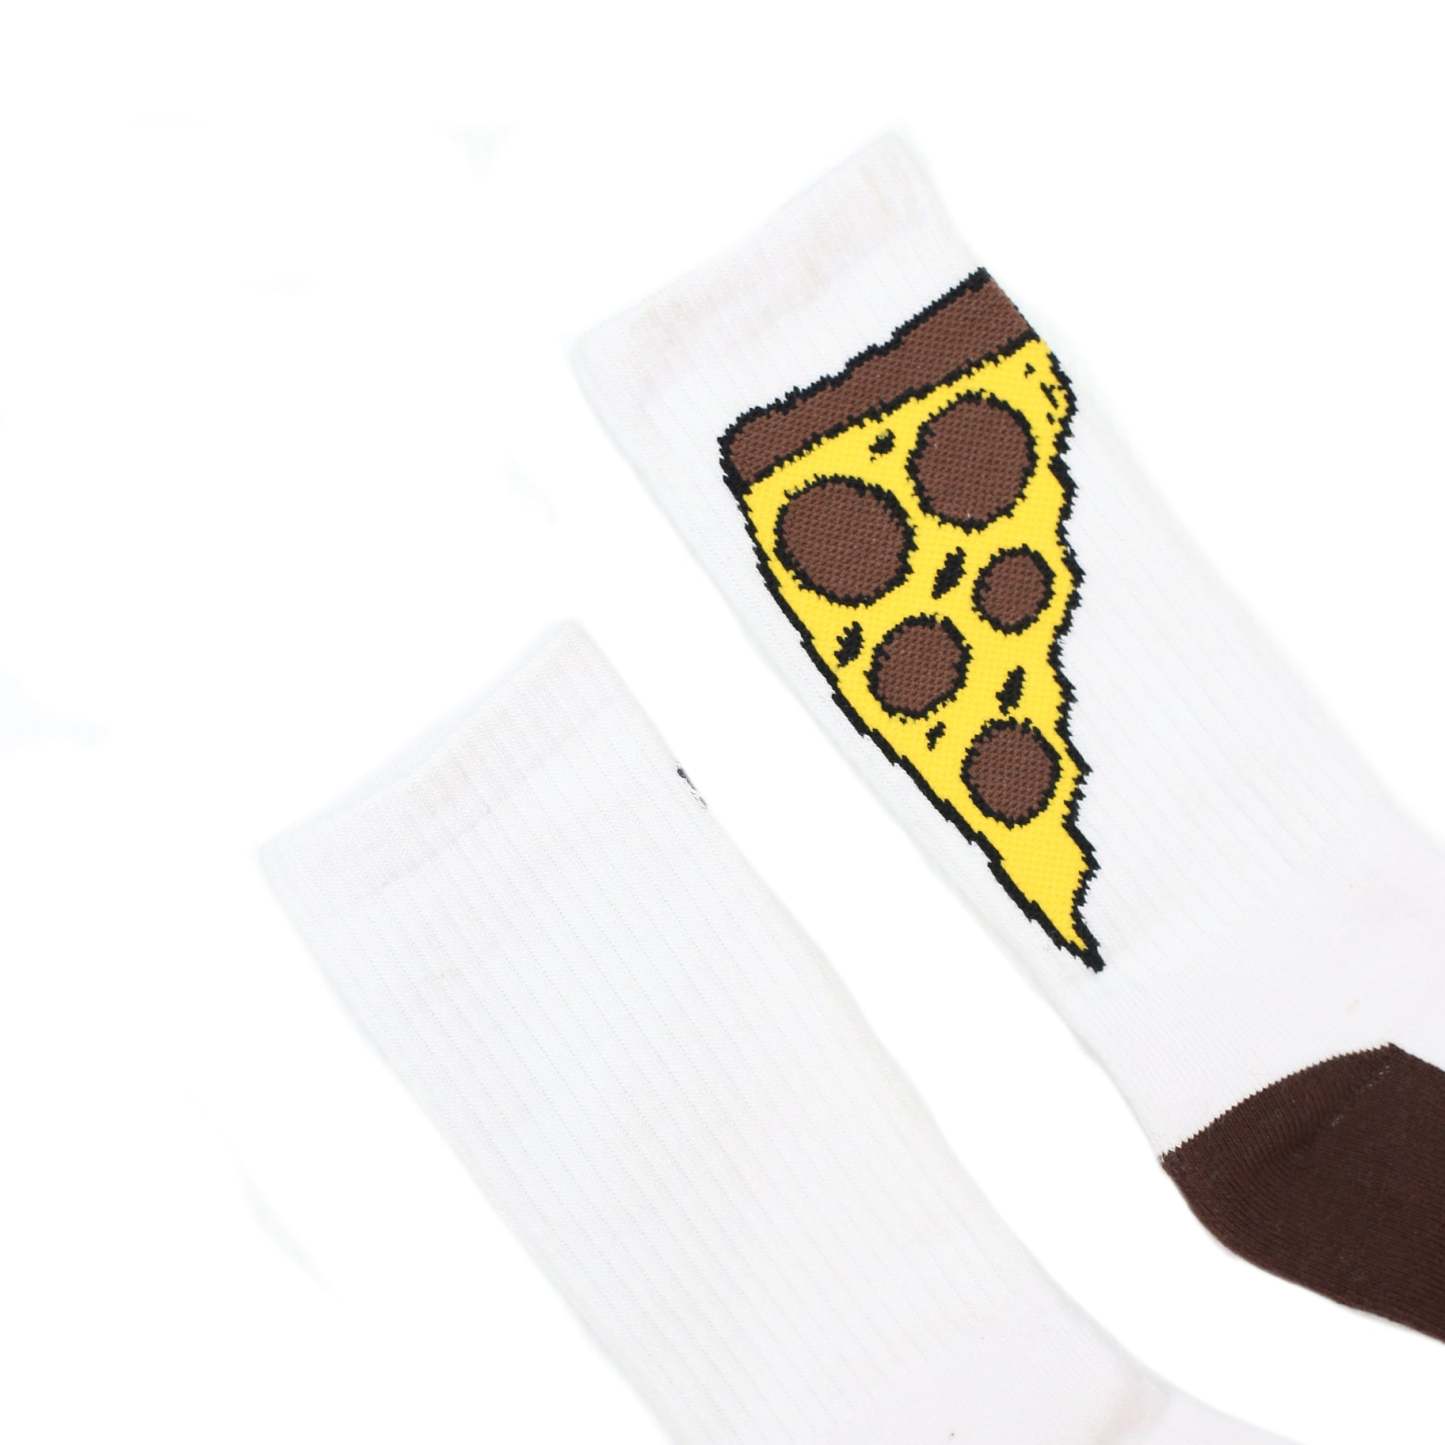 TKSB - Pizza Slice Socks